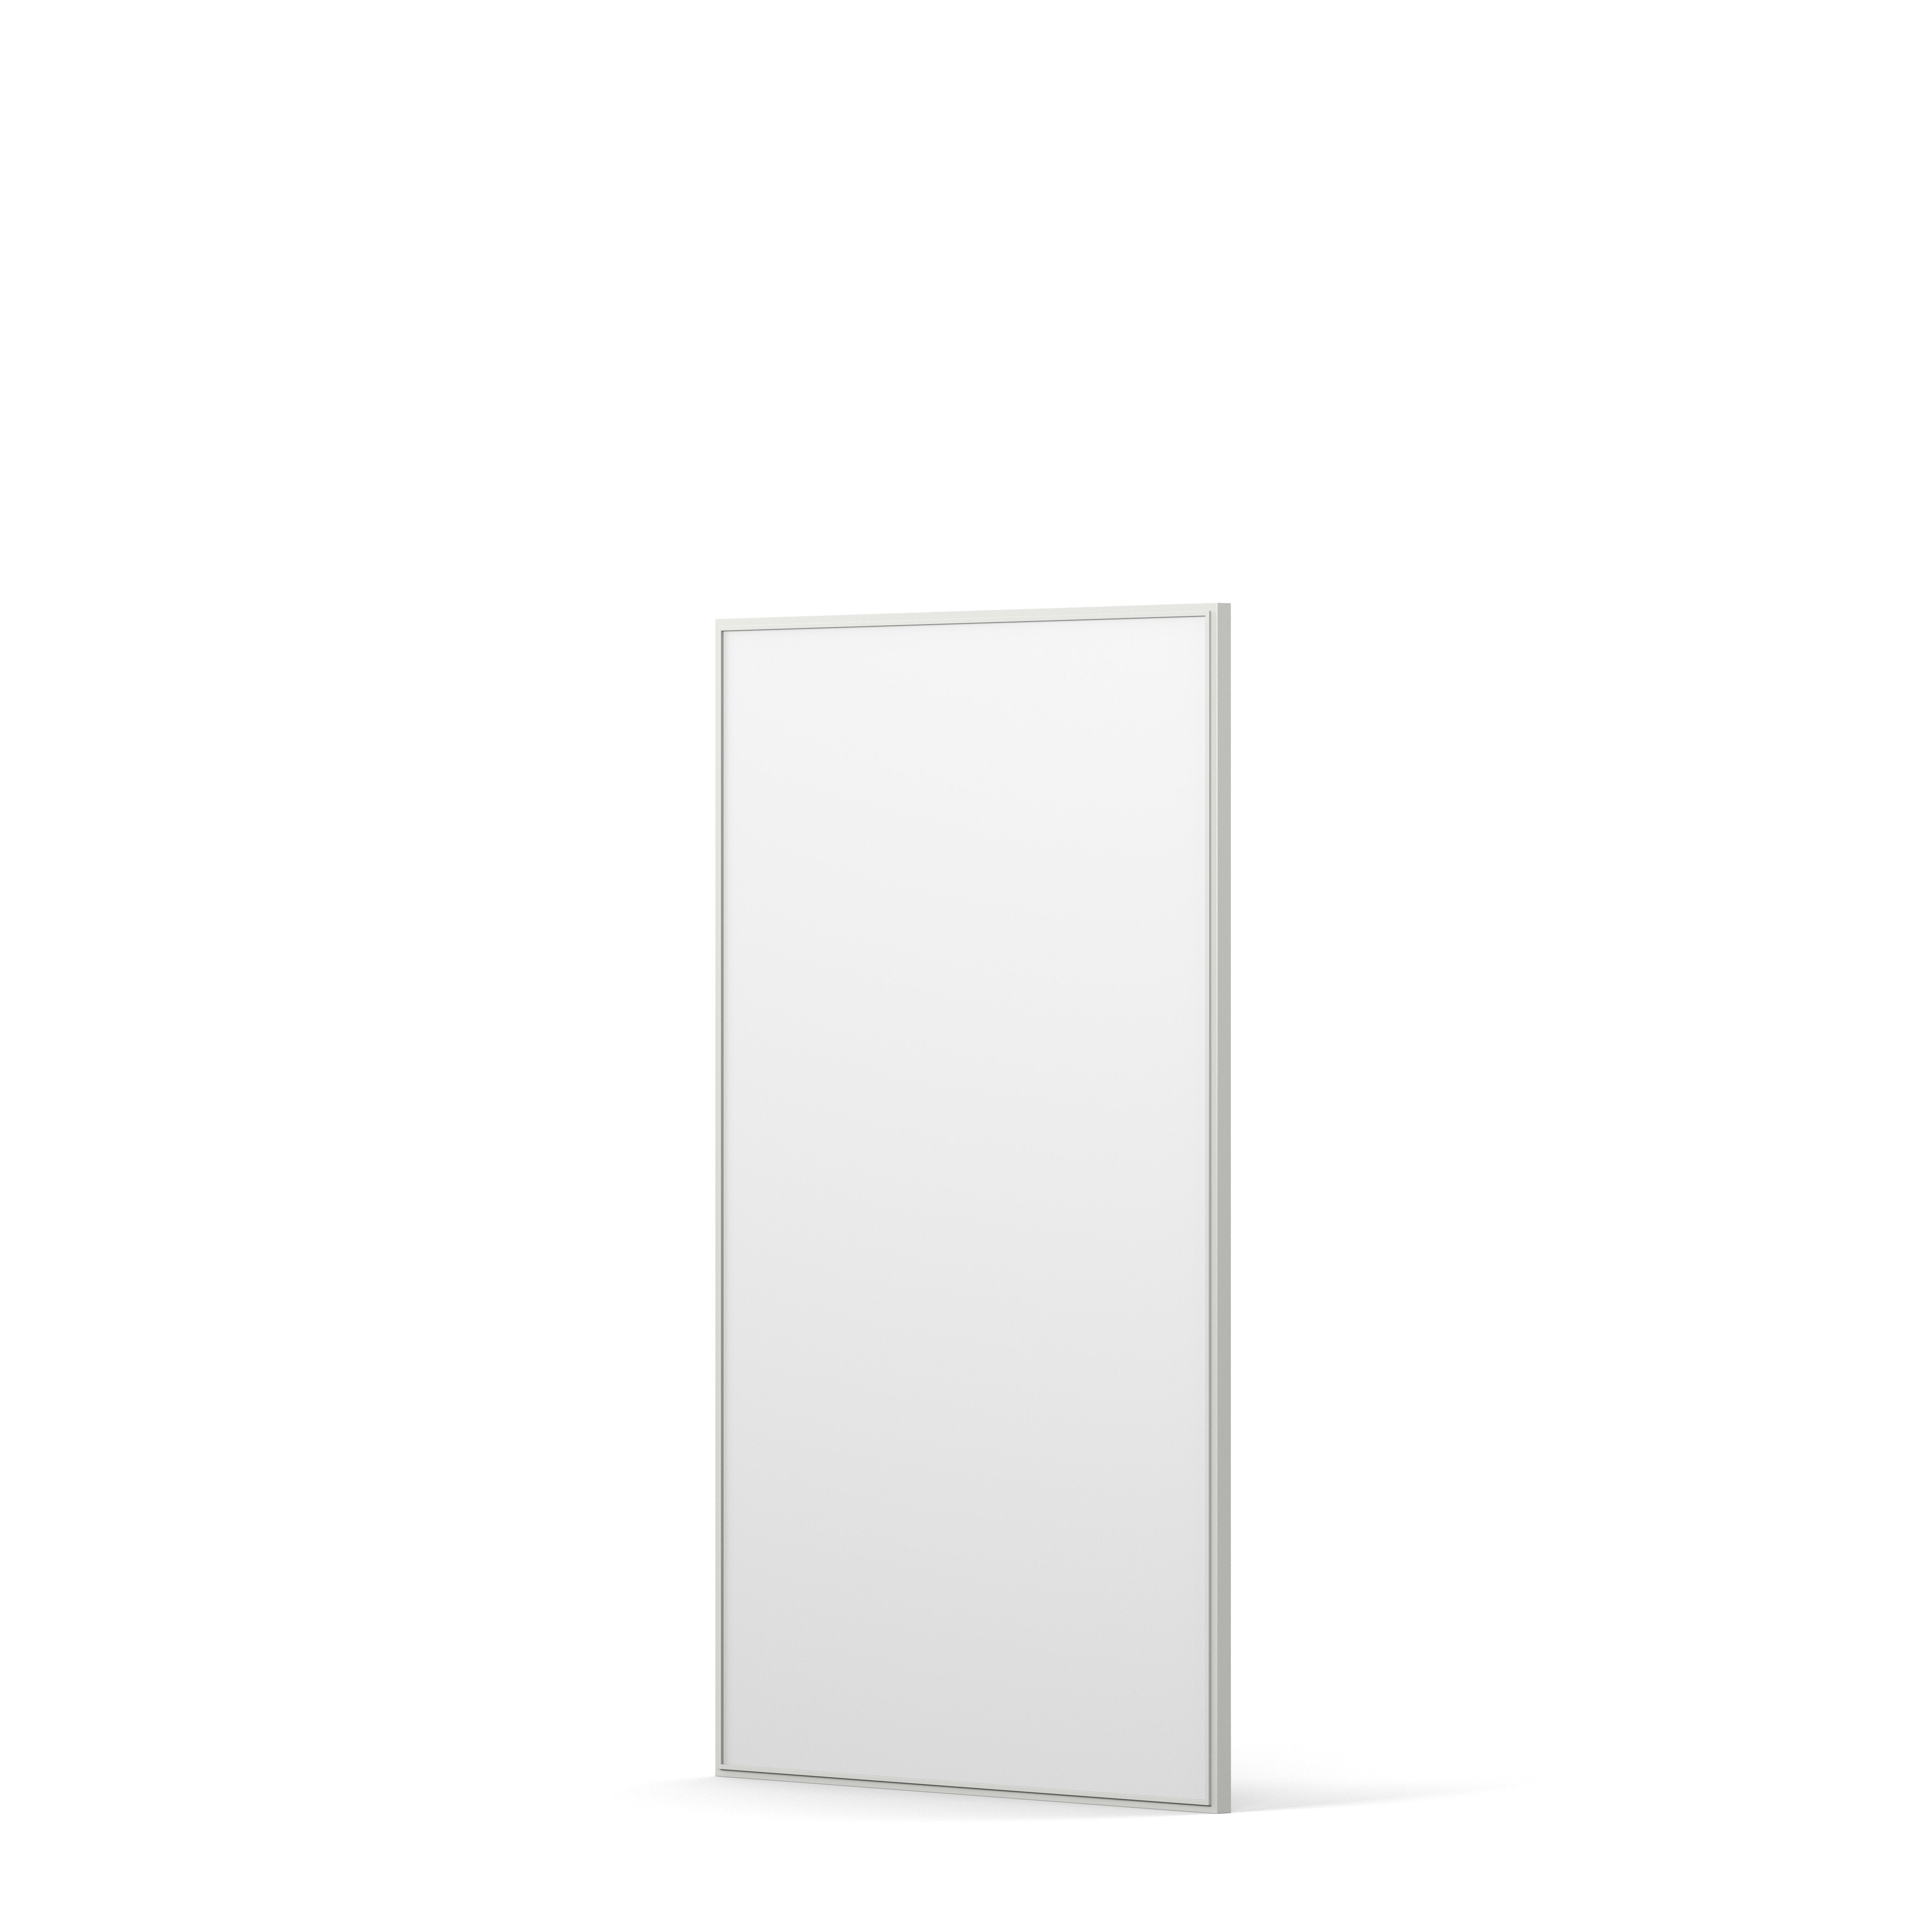 Englesson Cube Spegel Rektangulär #färg_Edge White